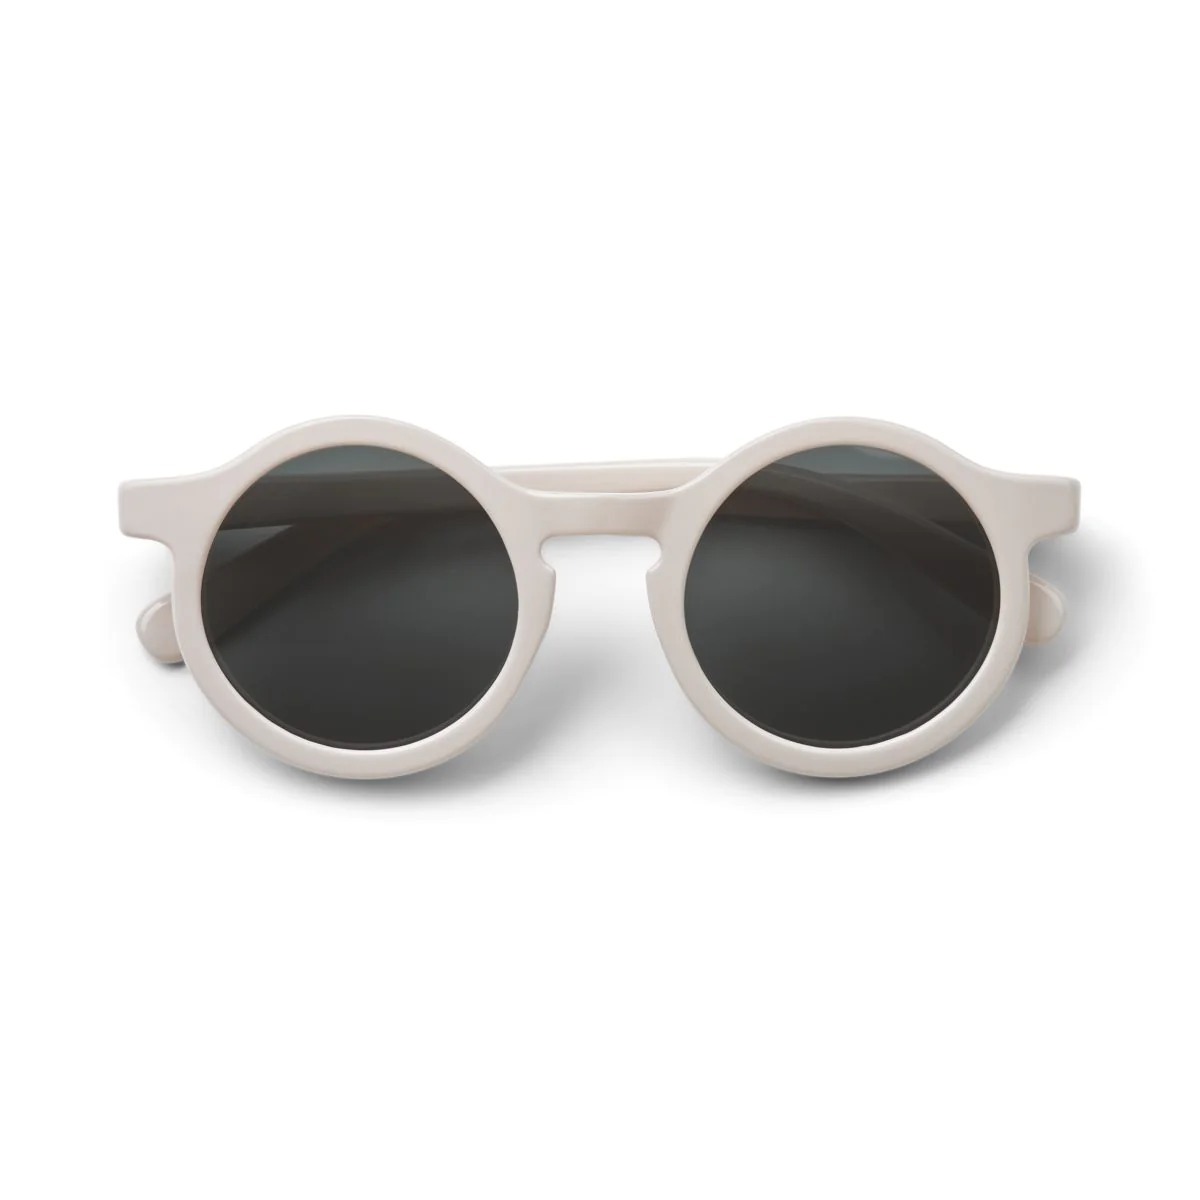 Детские солнцезащитные очки Liewood "Darla", песочные